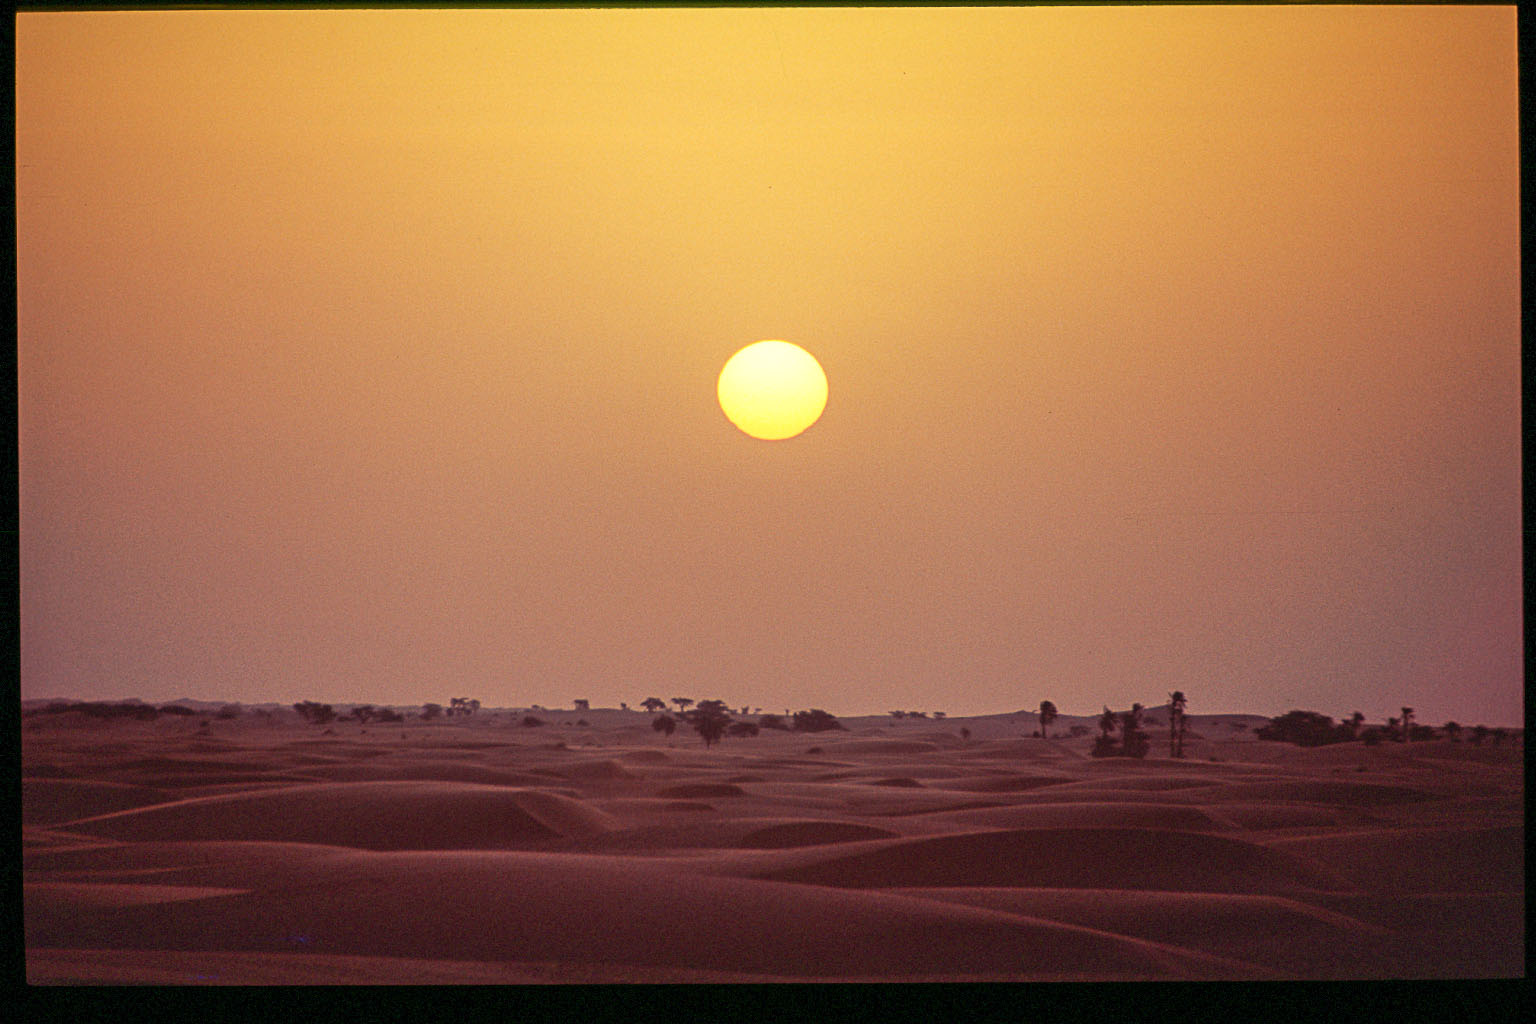 Chinguetti, rêve de désert - Carnet de voyage en Mauritanie